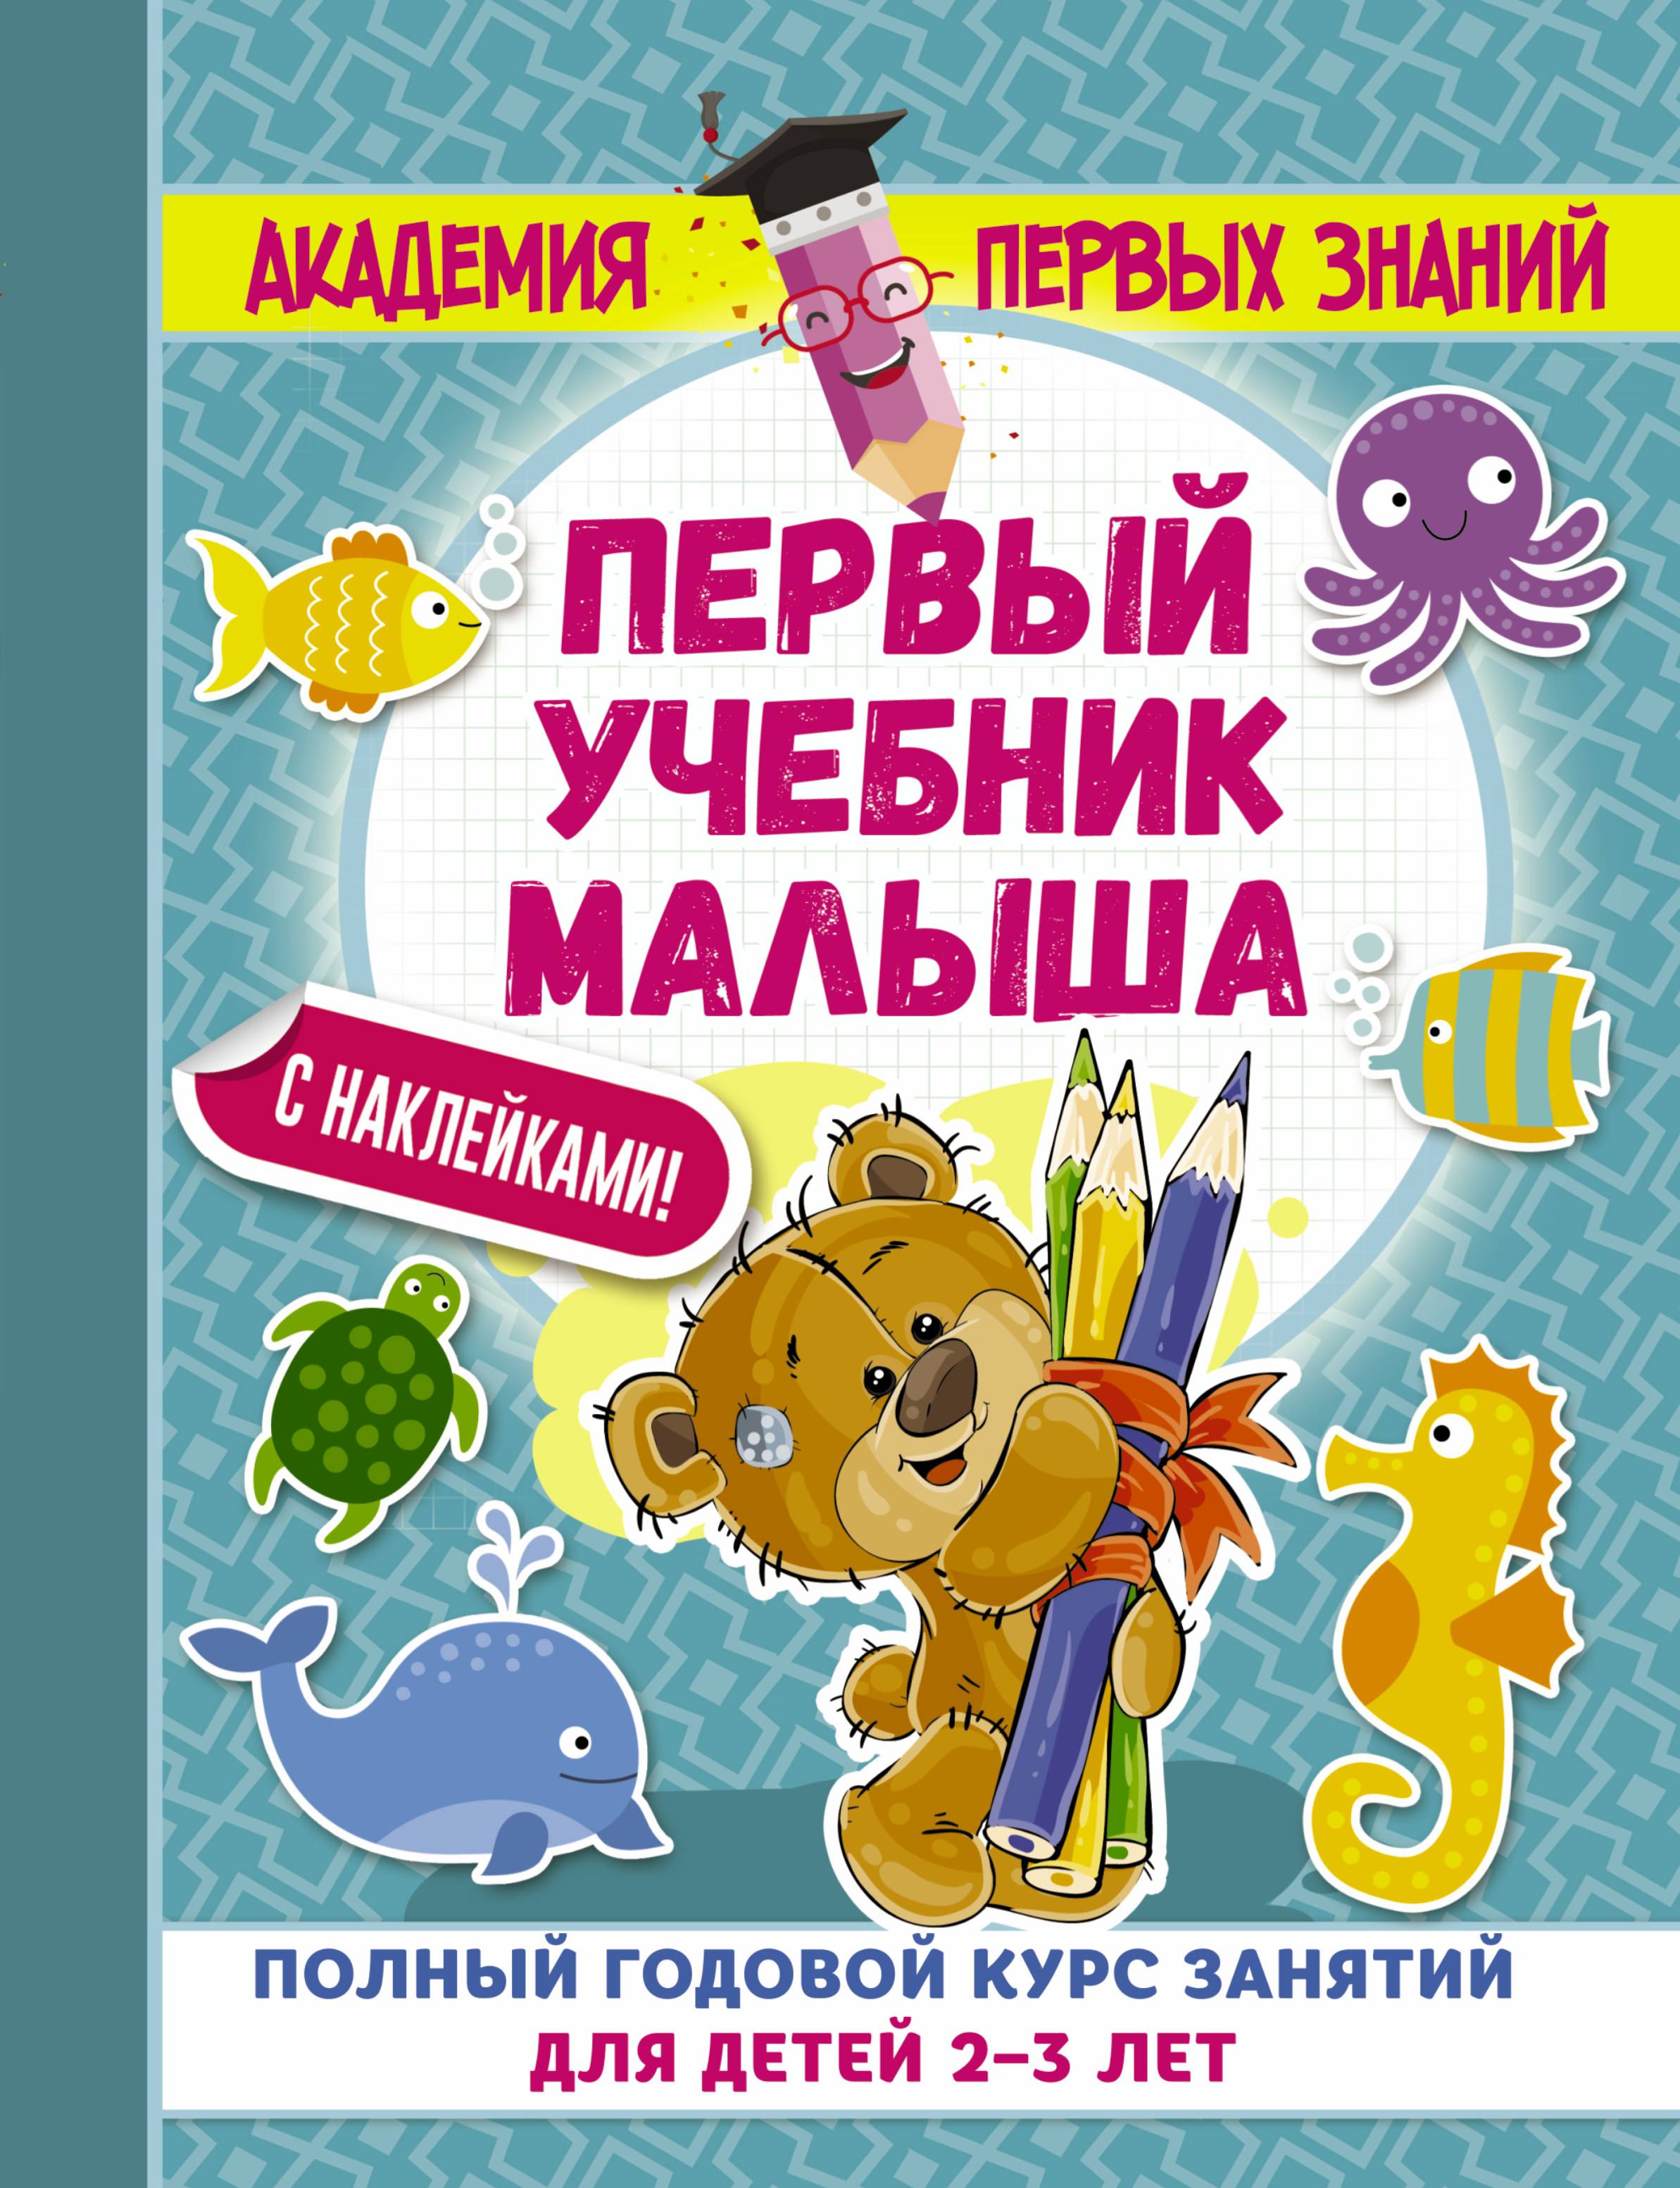 Книги для детей 6-7 лет | список из 30 лучших книг